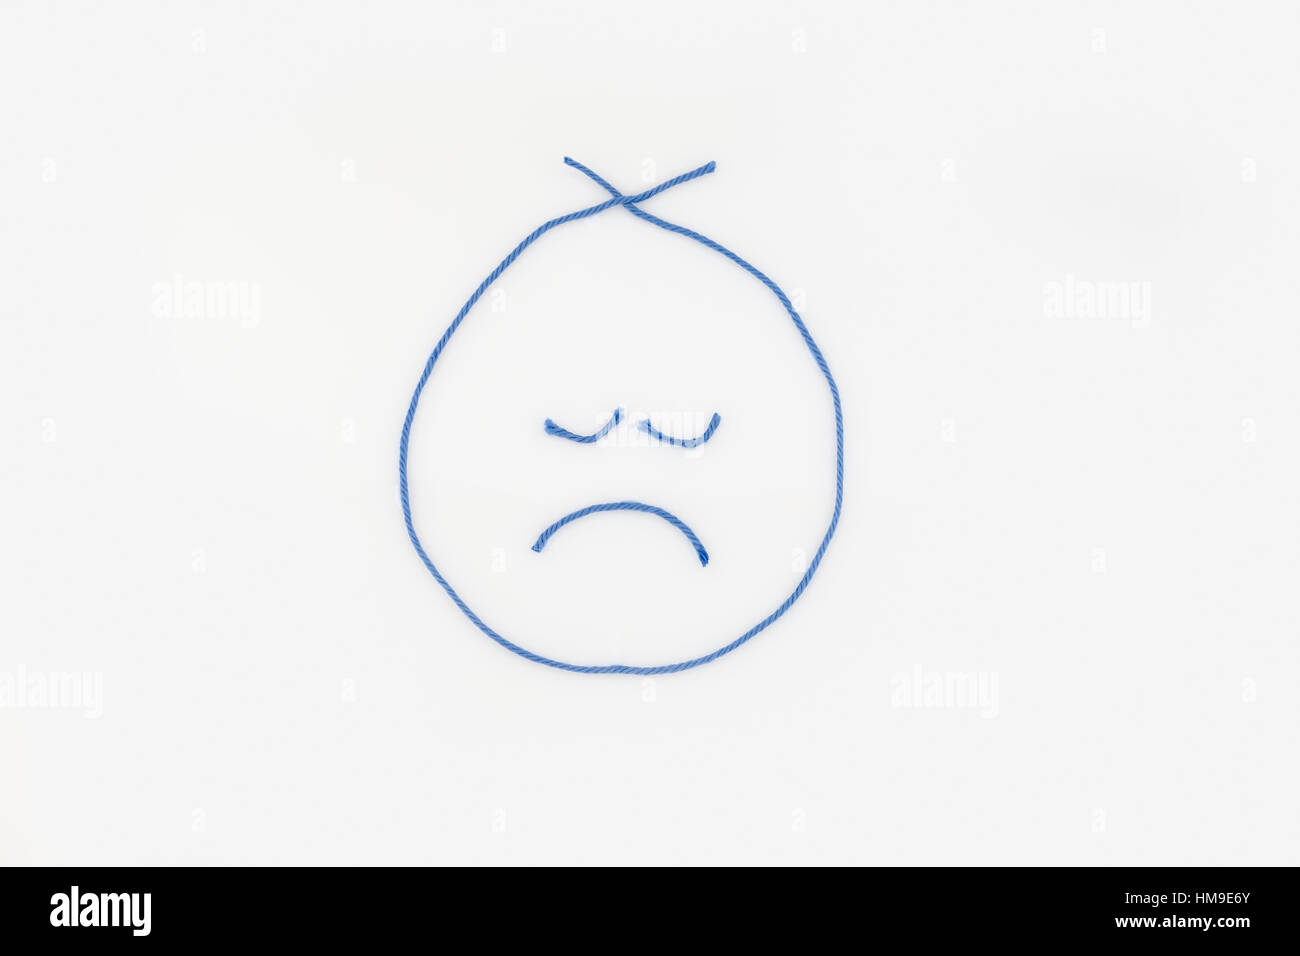 Ein trauriges Gesicht, geprägt vom blauen Garn. auf einem weißen Hintergrund. Ausschnitt. Abbildung. Konzept, konzeptionelle. Stockfoto